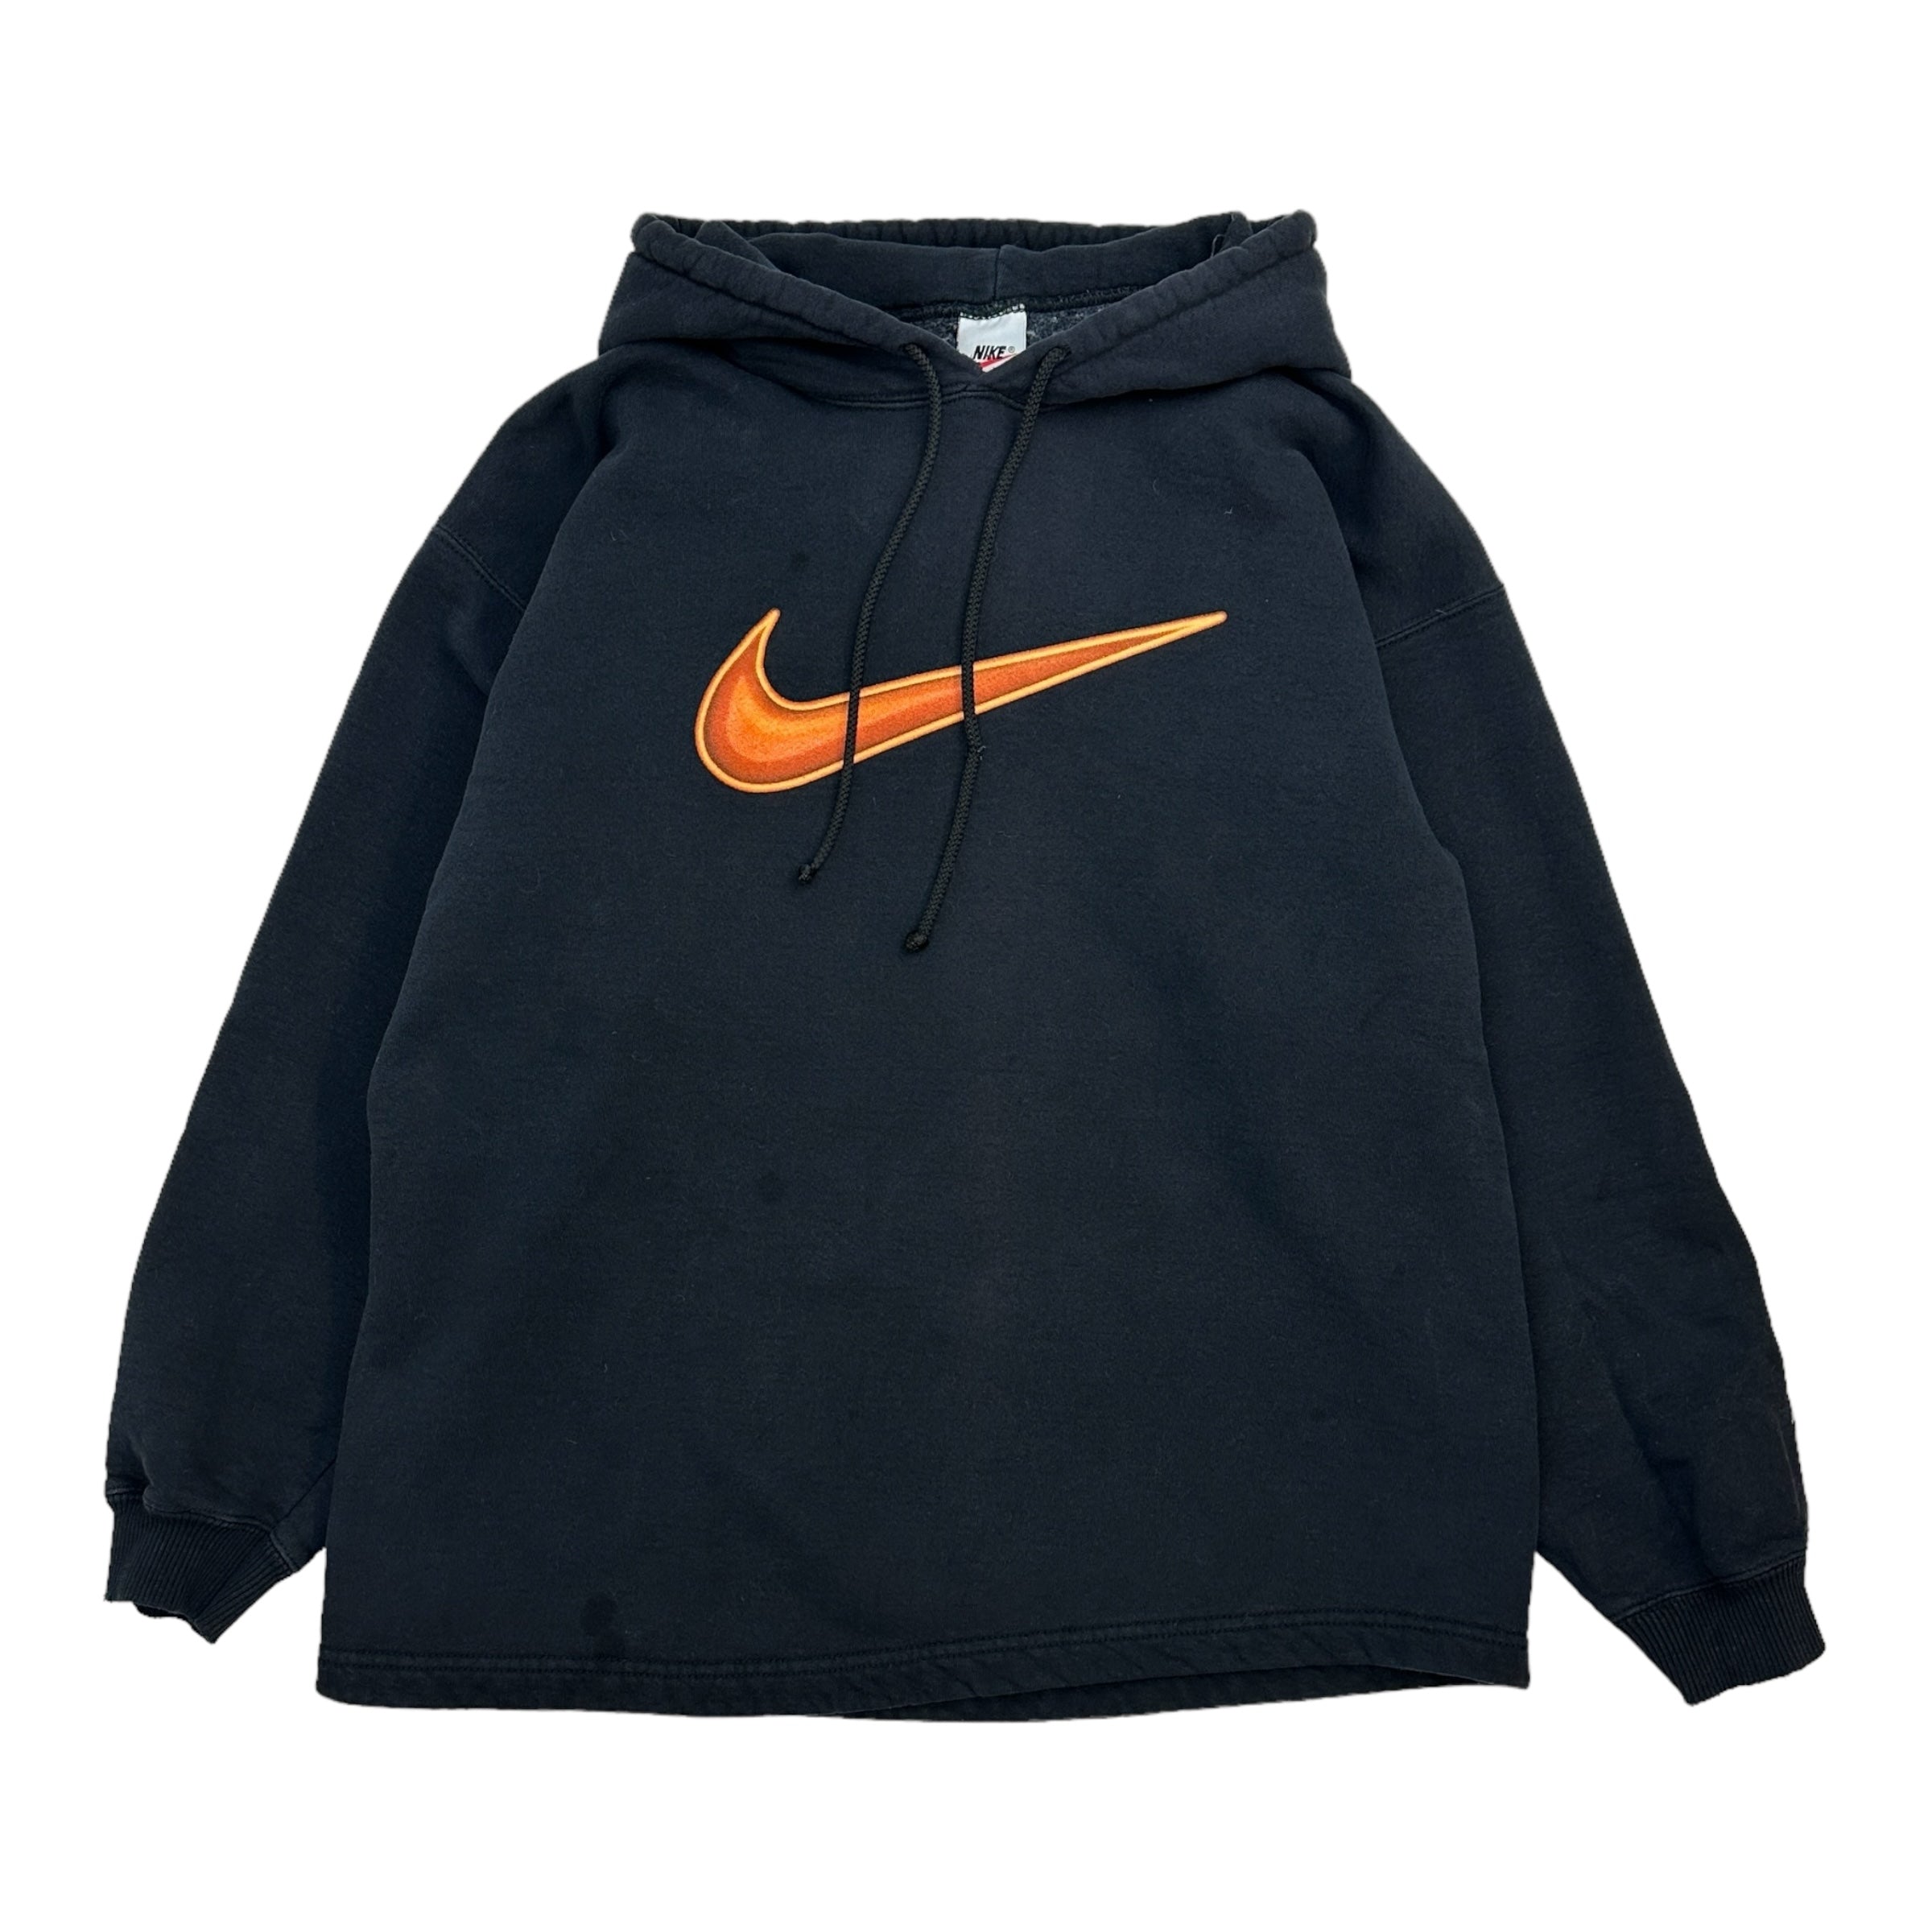 Vintage Nike Swoosh Hoodie Black/Orange